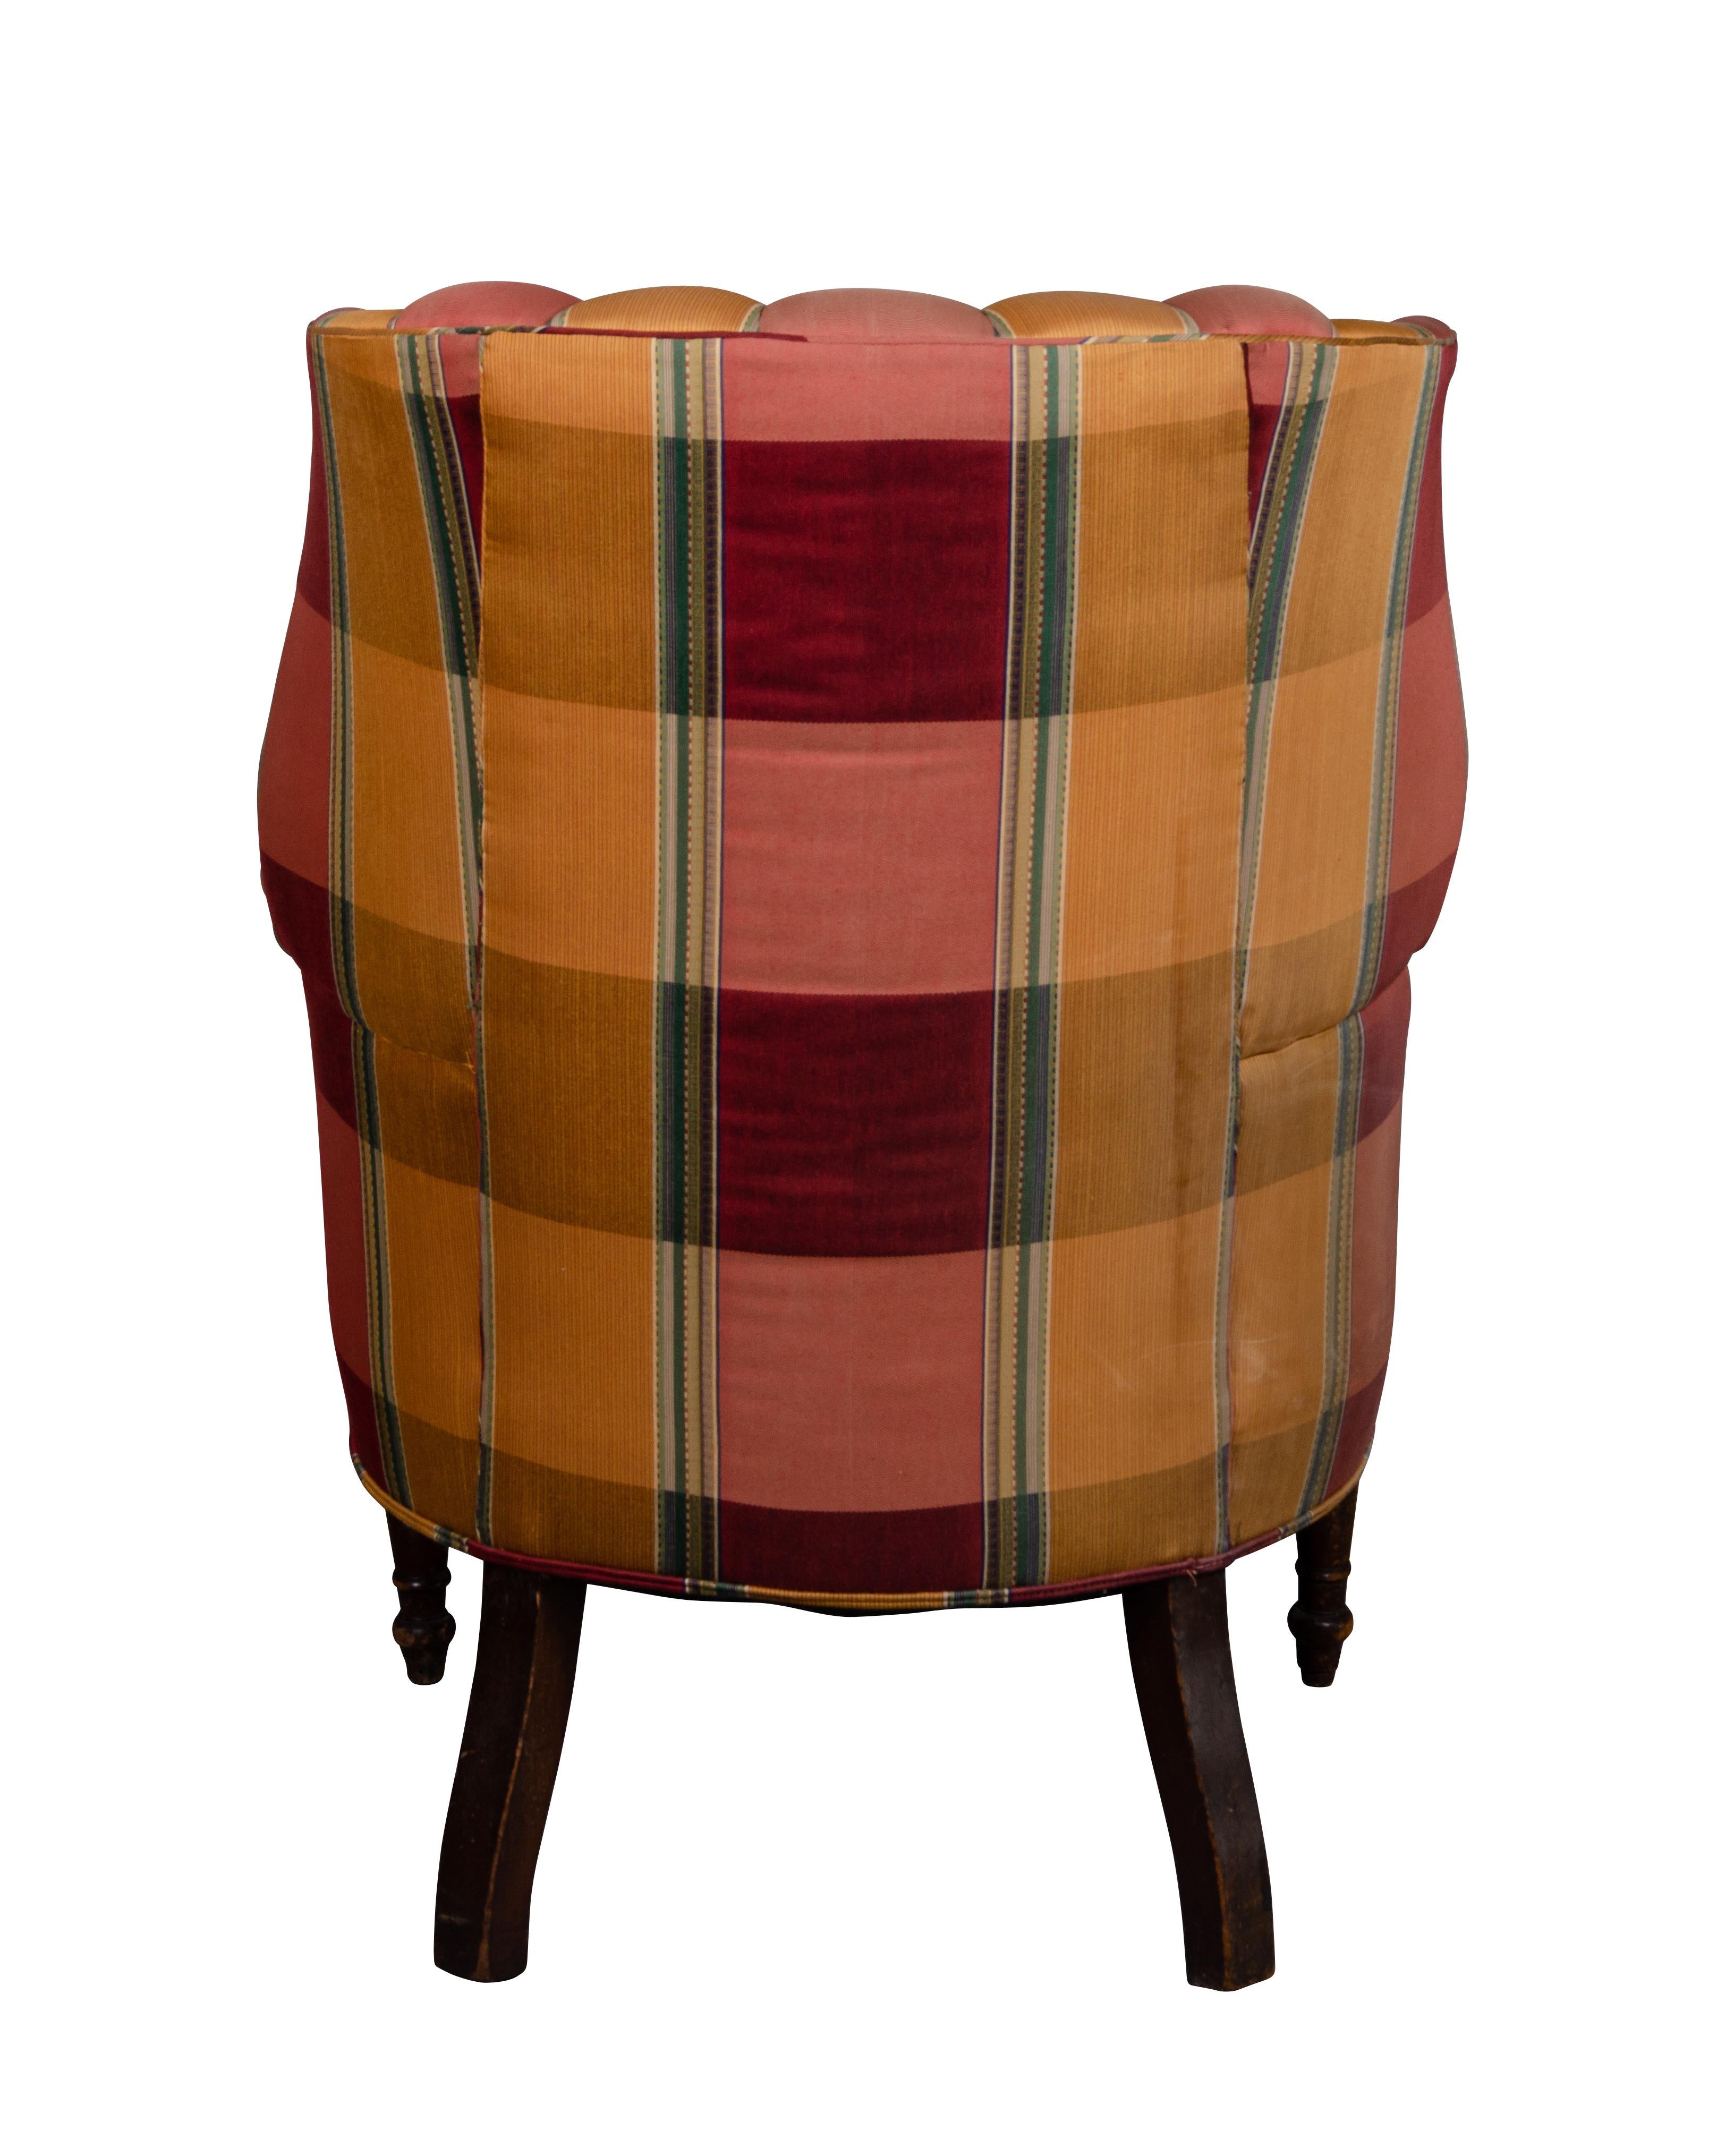 Regency Mahogany Barrel Back Wing Chair 1